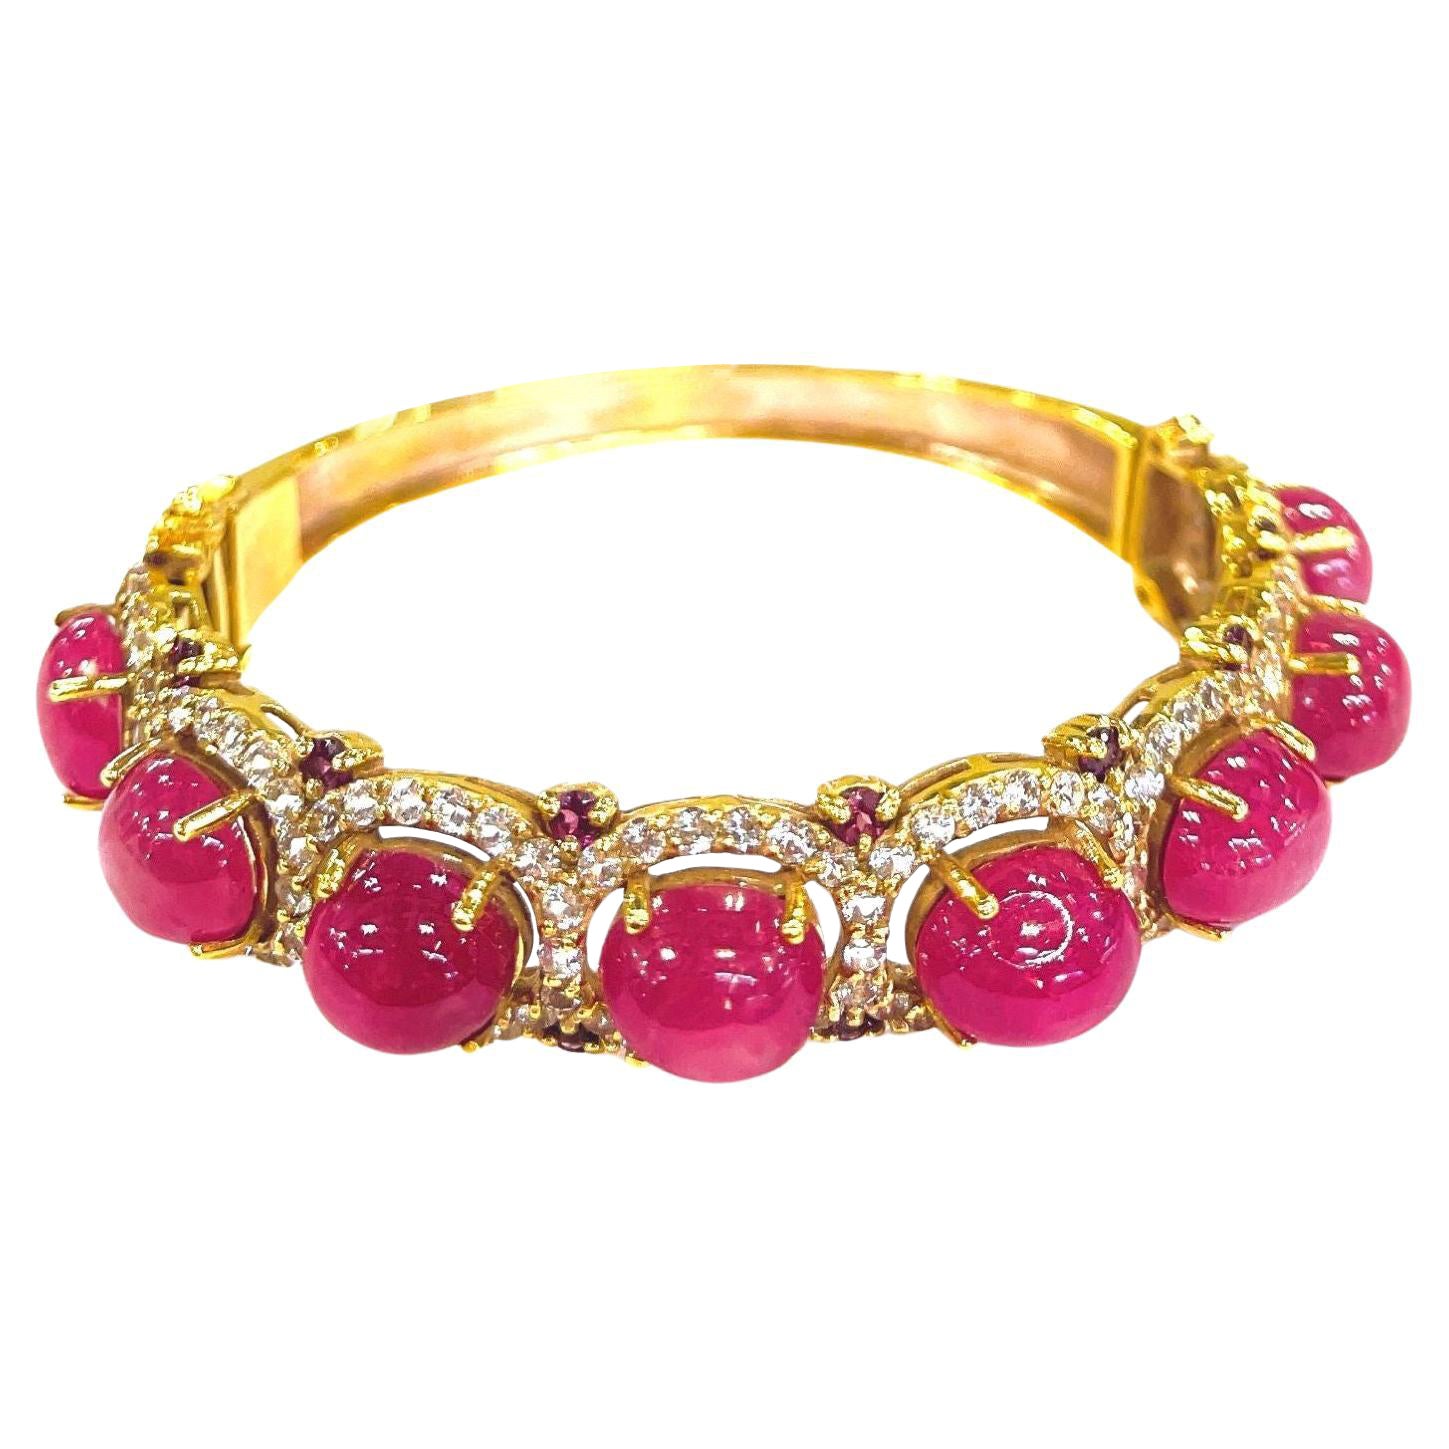 Bochic “Capri” Red Ruby & White Topaz Bangle Set In 18K Gold & Silver 